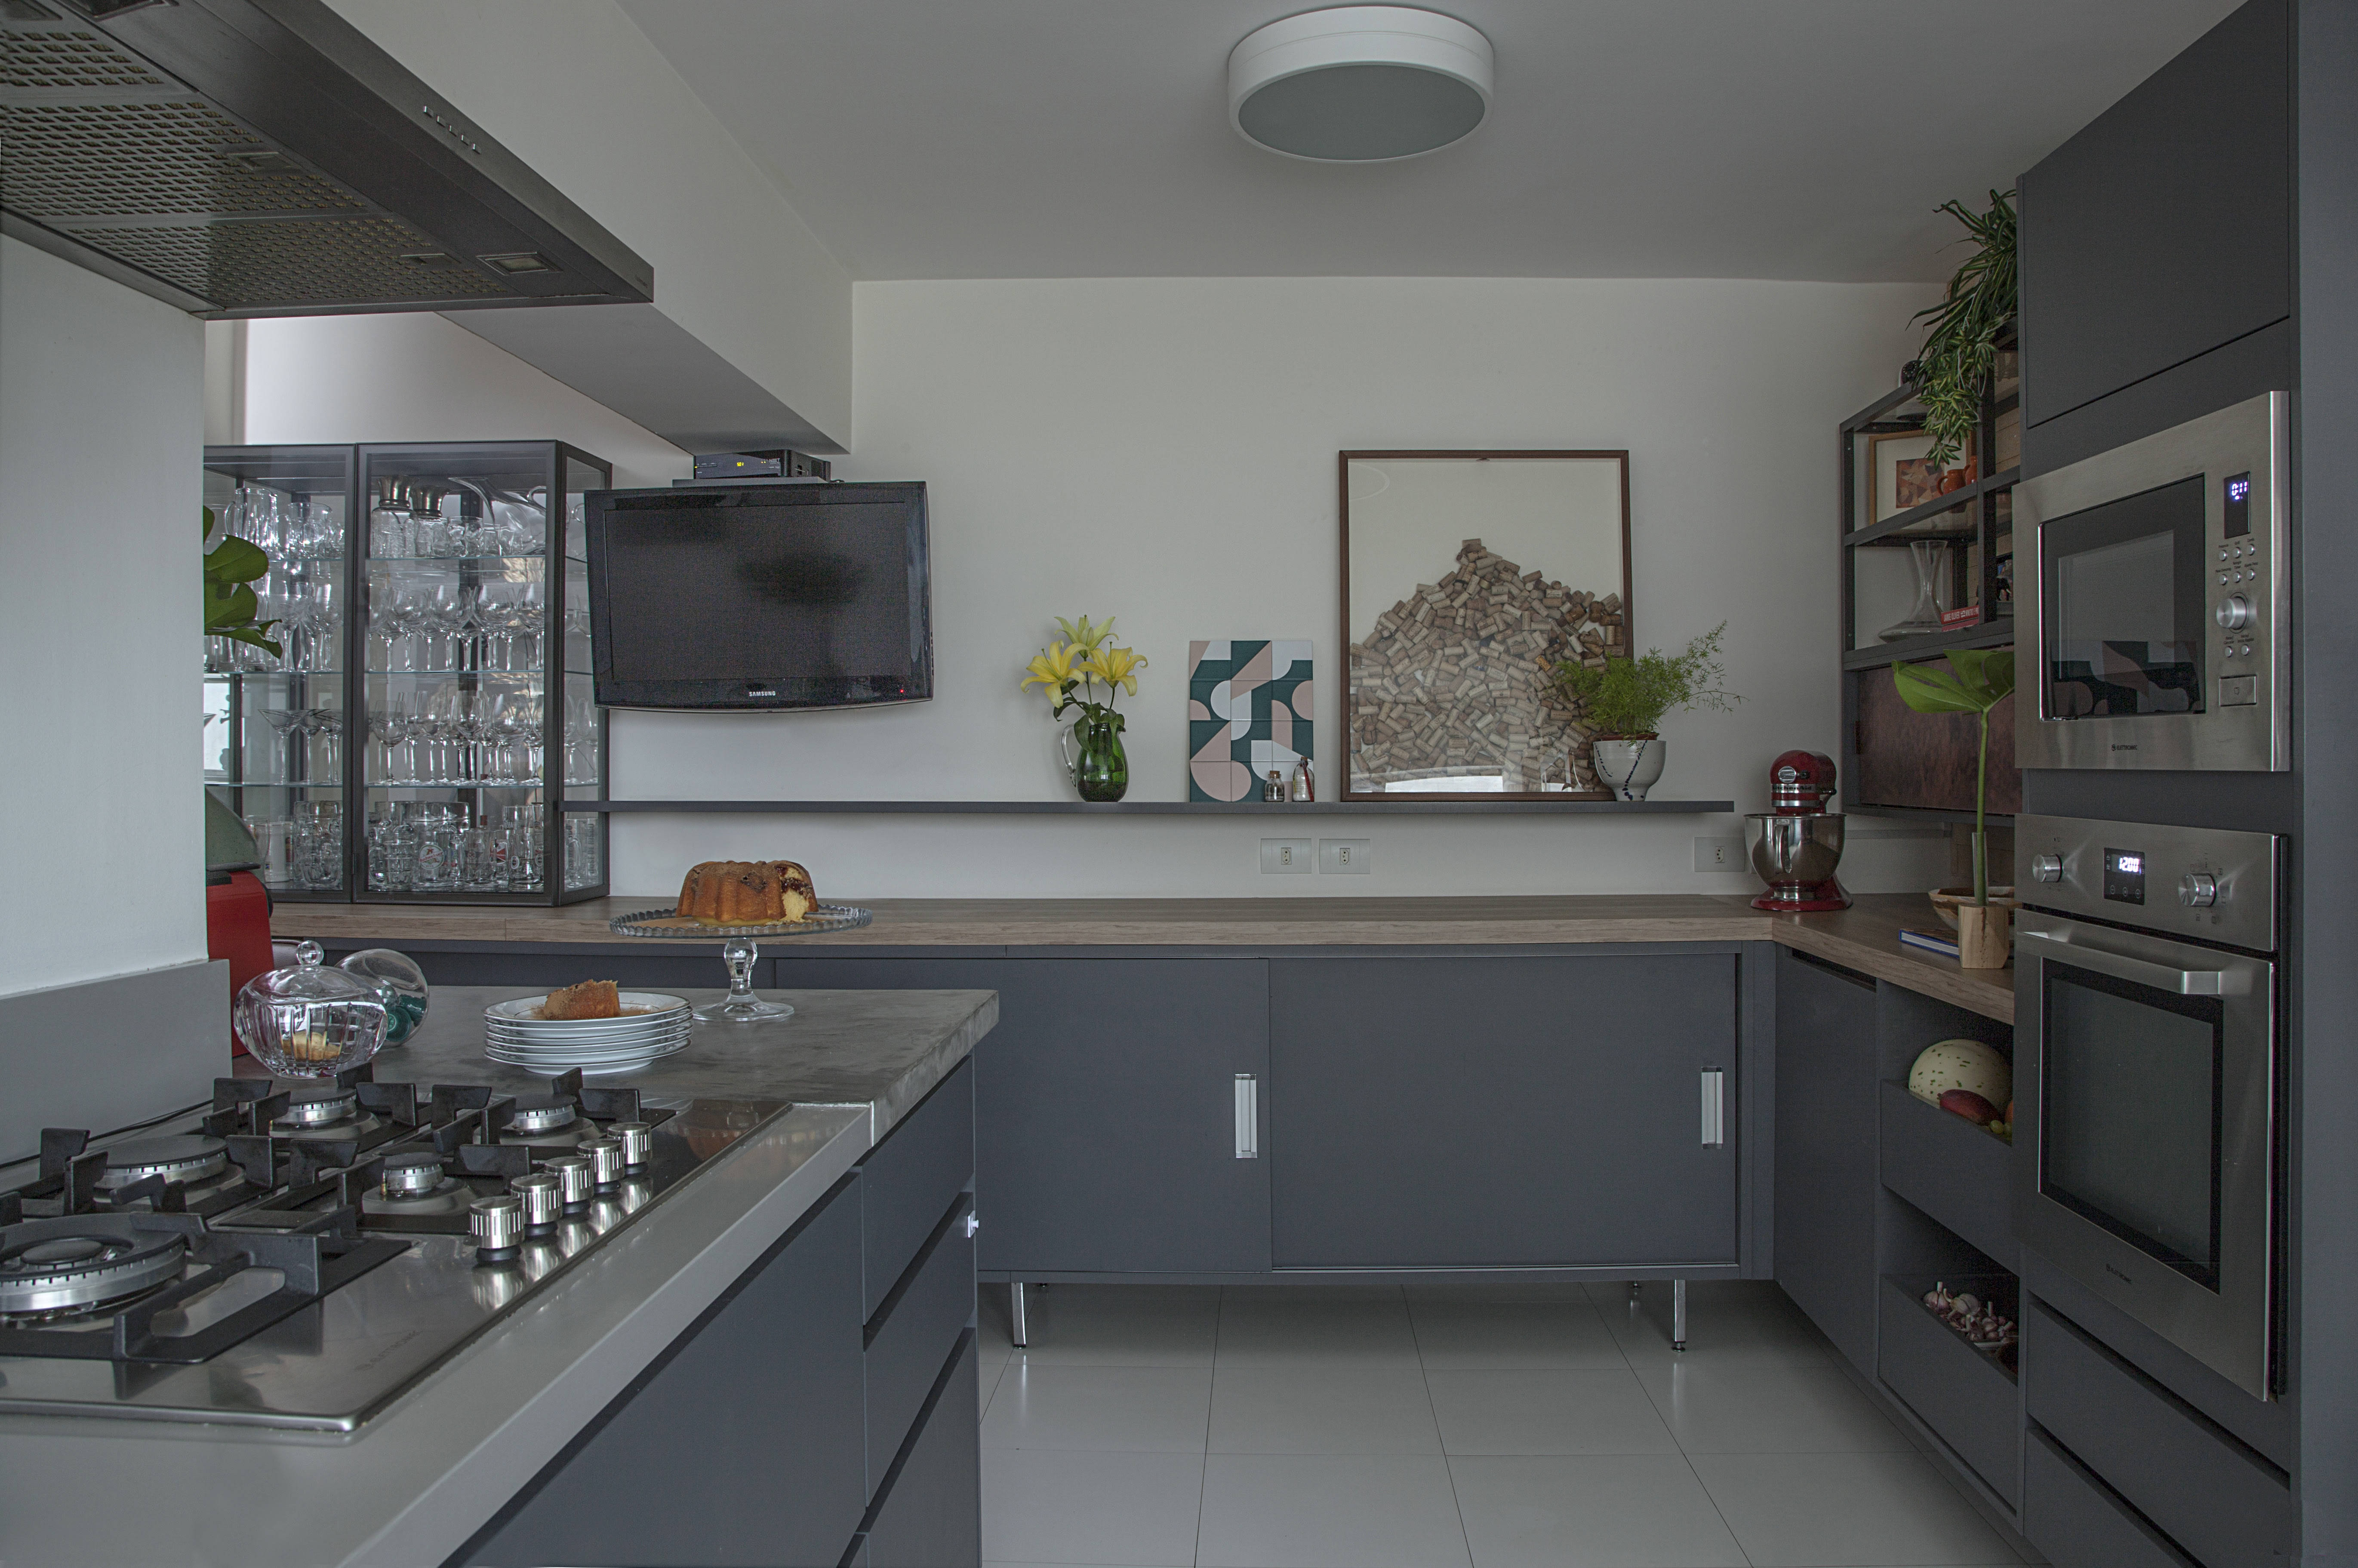  Assinada pelas arquitetas Pati Cillo e Lu Degani, a cozinha usa do estilo moderno com a tendência monocromática, expressou toda a singularidade do cinza. | Foto Luis Gomes

 